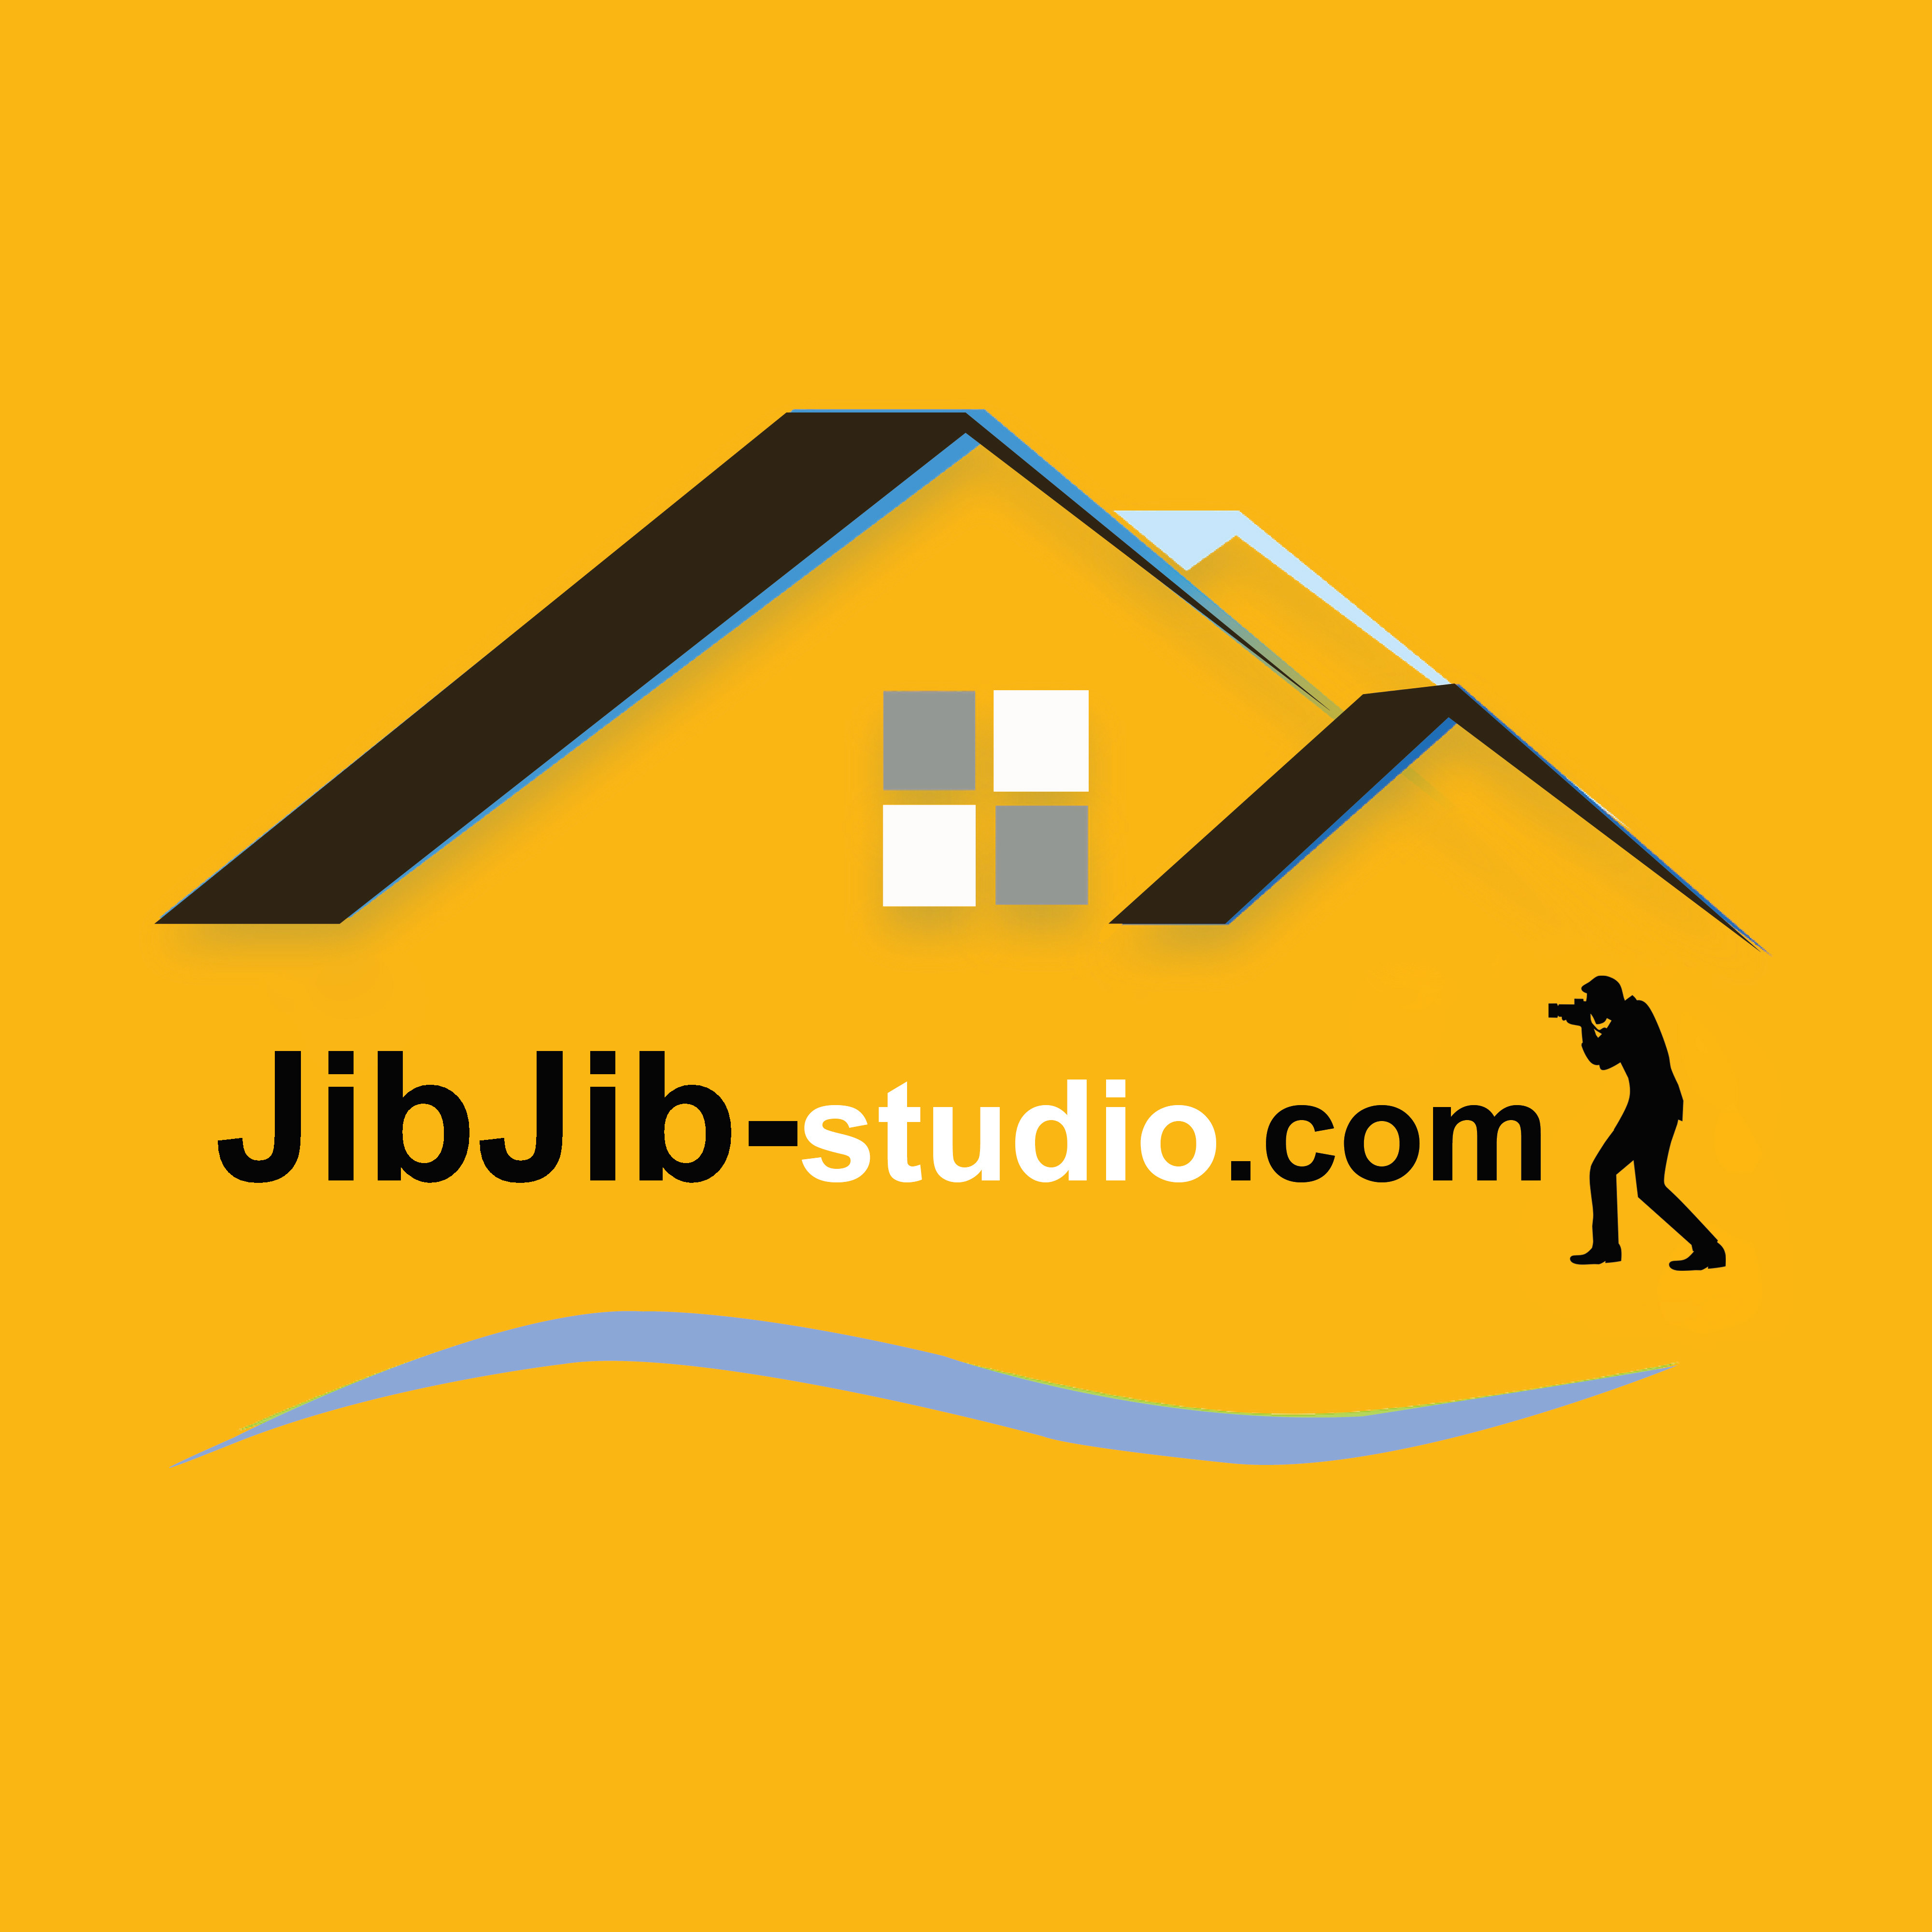 Jib Jib studio